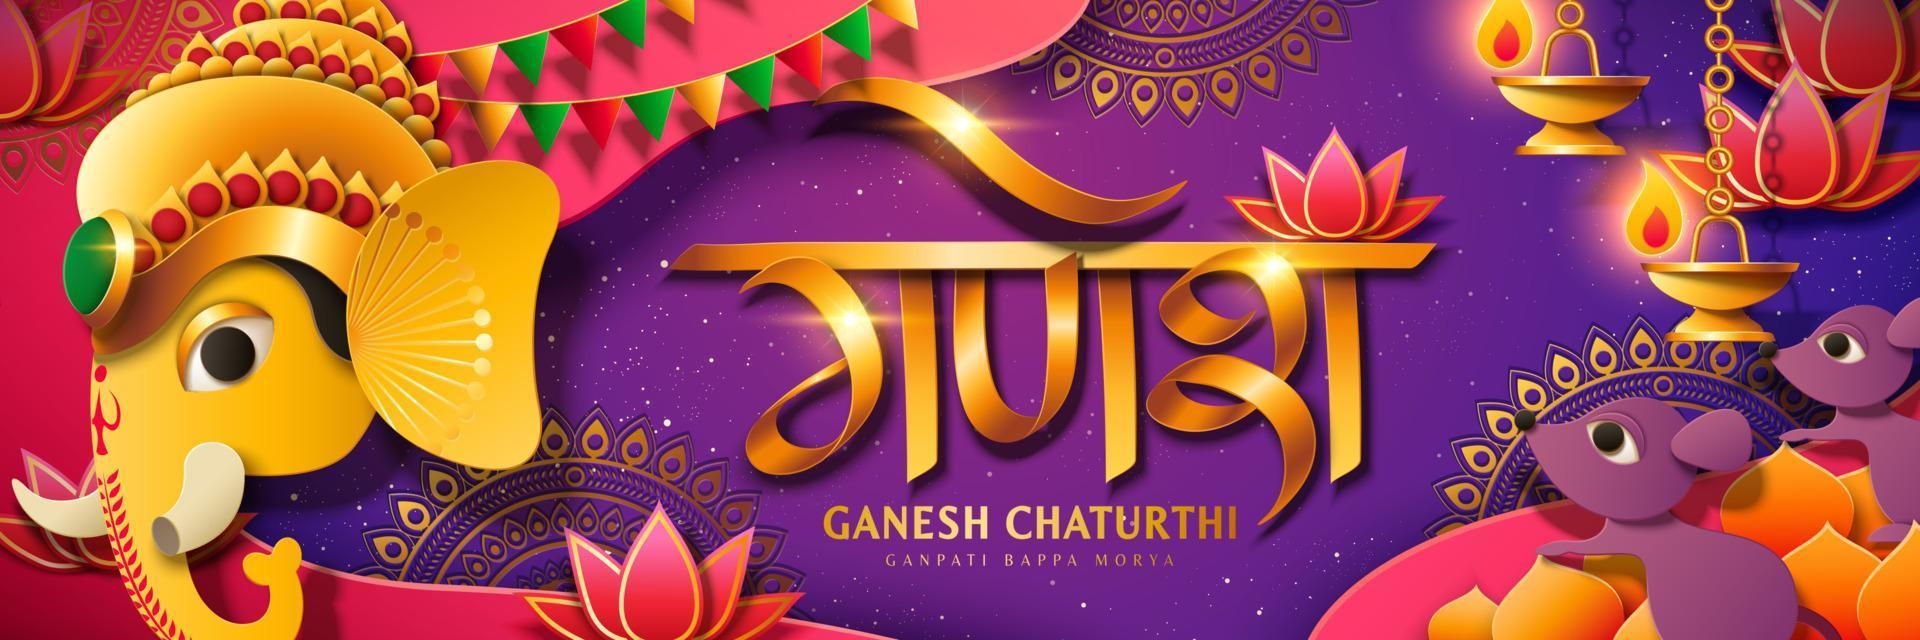 bannière du festival de ganesh chaturthi avec la tête de ganesha du dieu hindou de couleur dorée, ganesha écrit en mots hindi sur fond violet vecteur